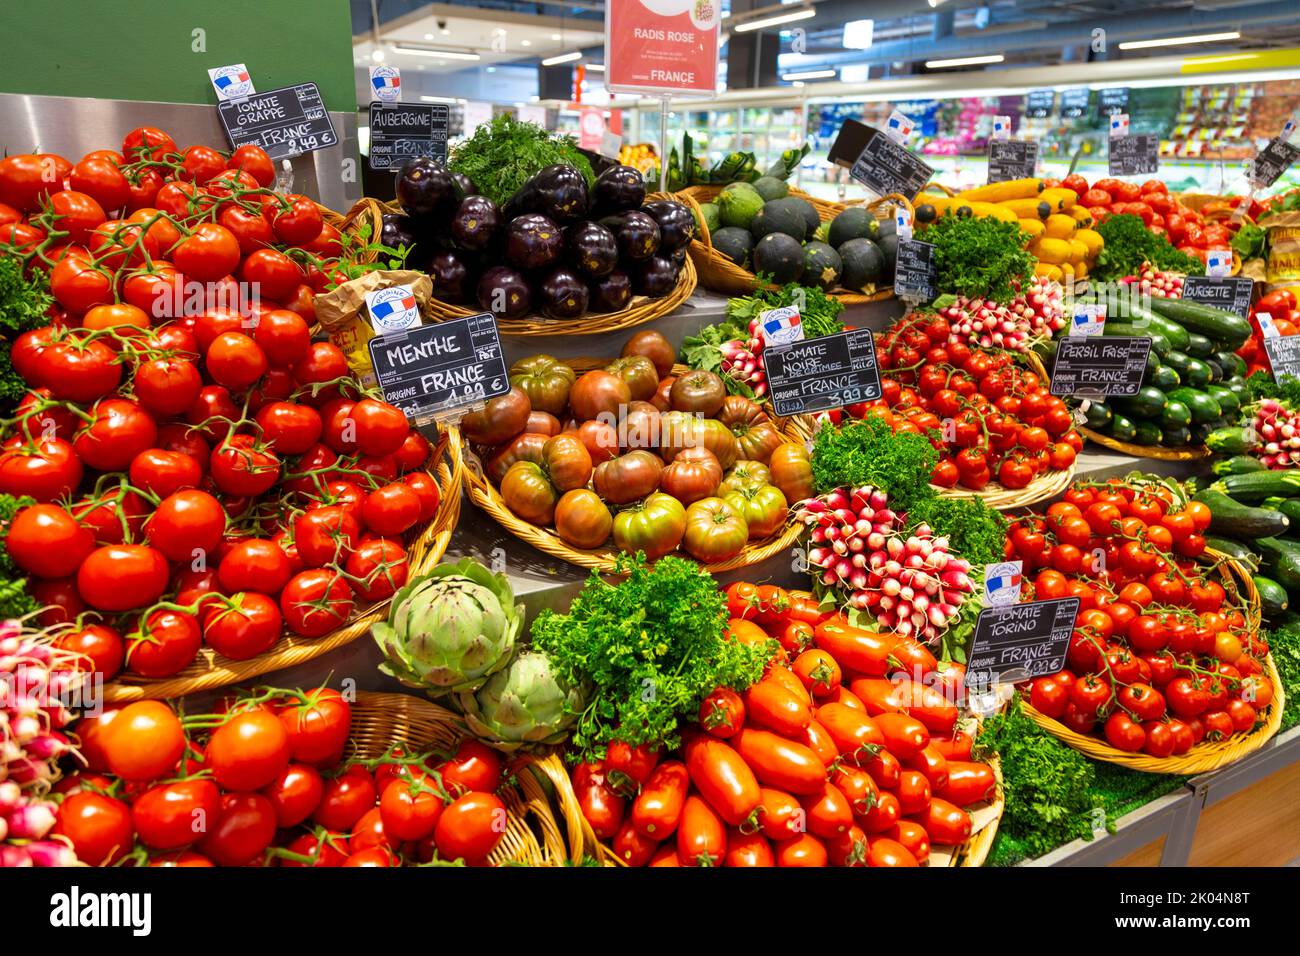 Verpackungsfreies Gemüse, das im Monprix-Supermarkt in Colmar, Frankreich, aufgelegt wird Stockfoto